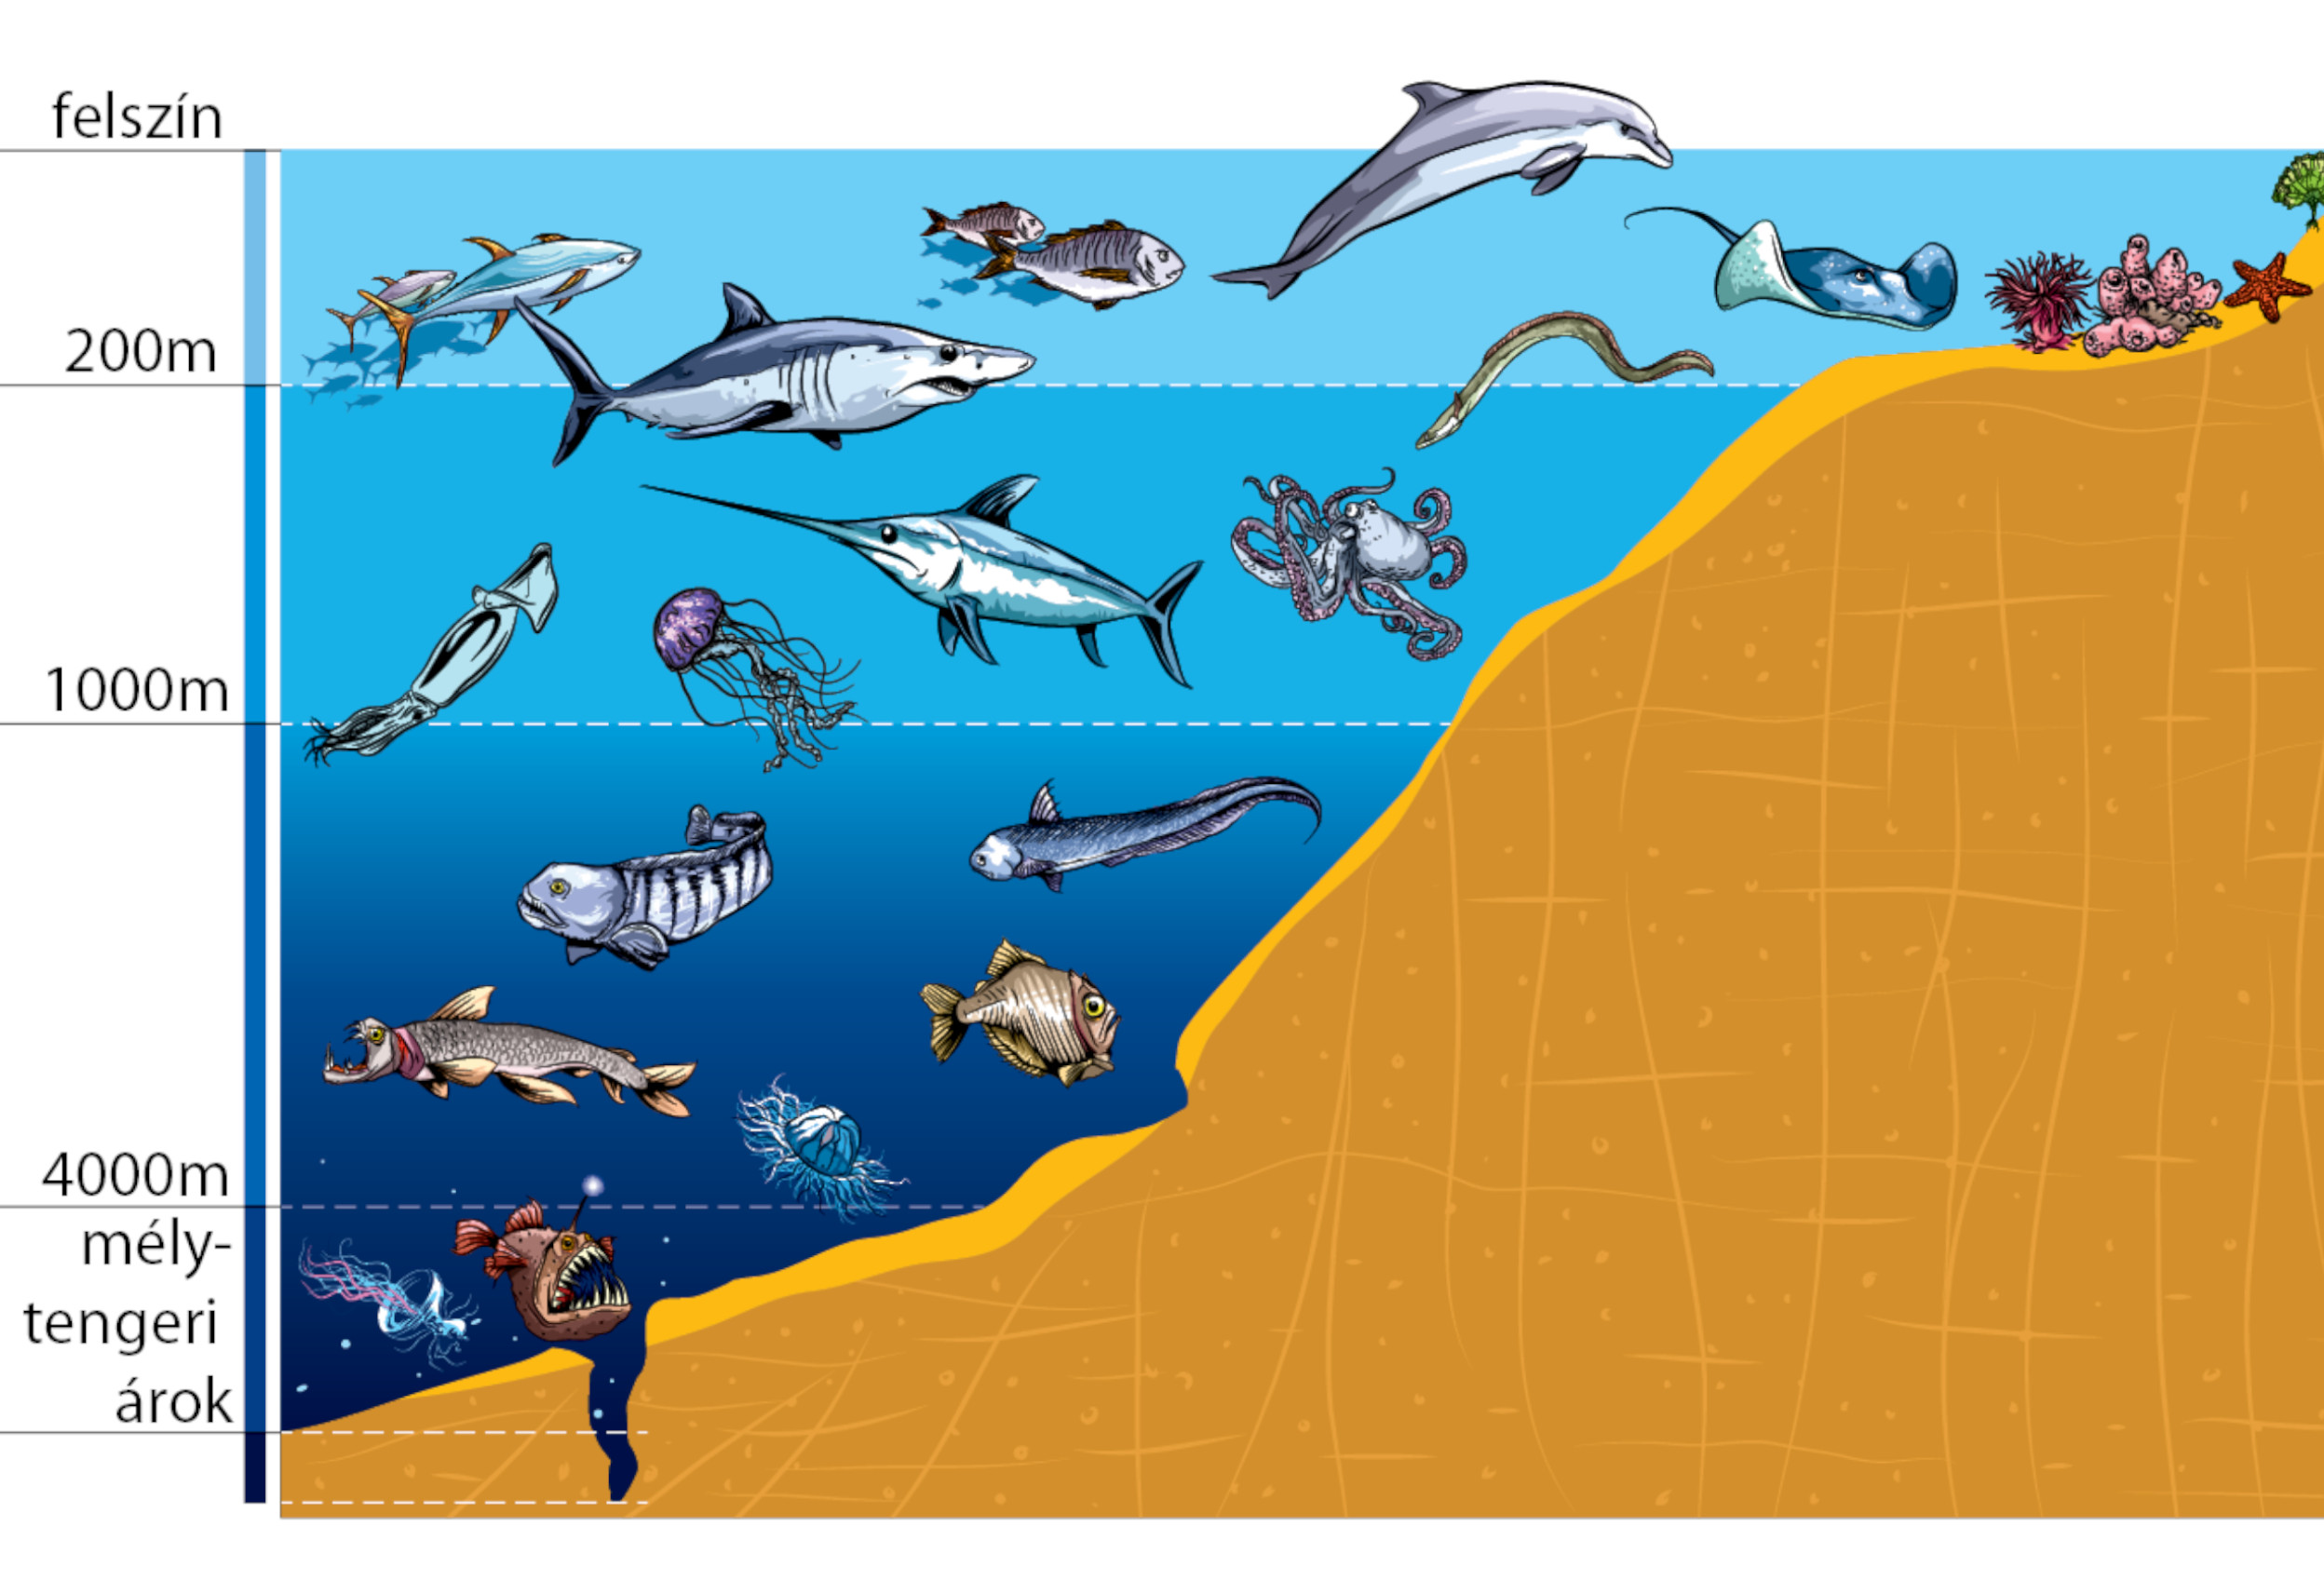 С участием живых организмов происходит мирового океана. Зоны мирового океана и их обитатели. Жизнь организмов в морях и океанах. Слои океана. Обитатели моря по глубине.